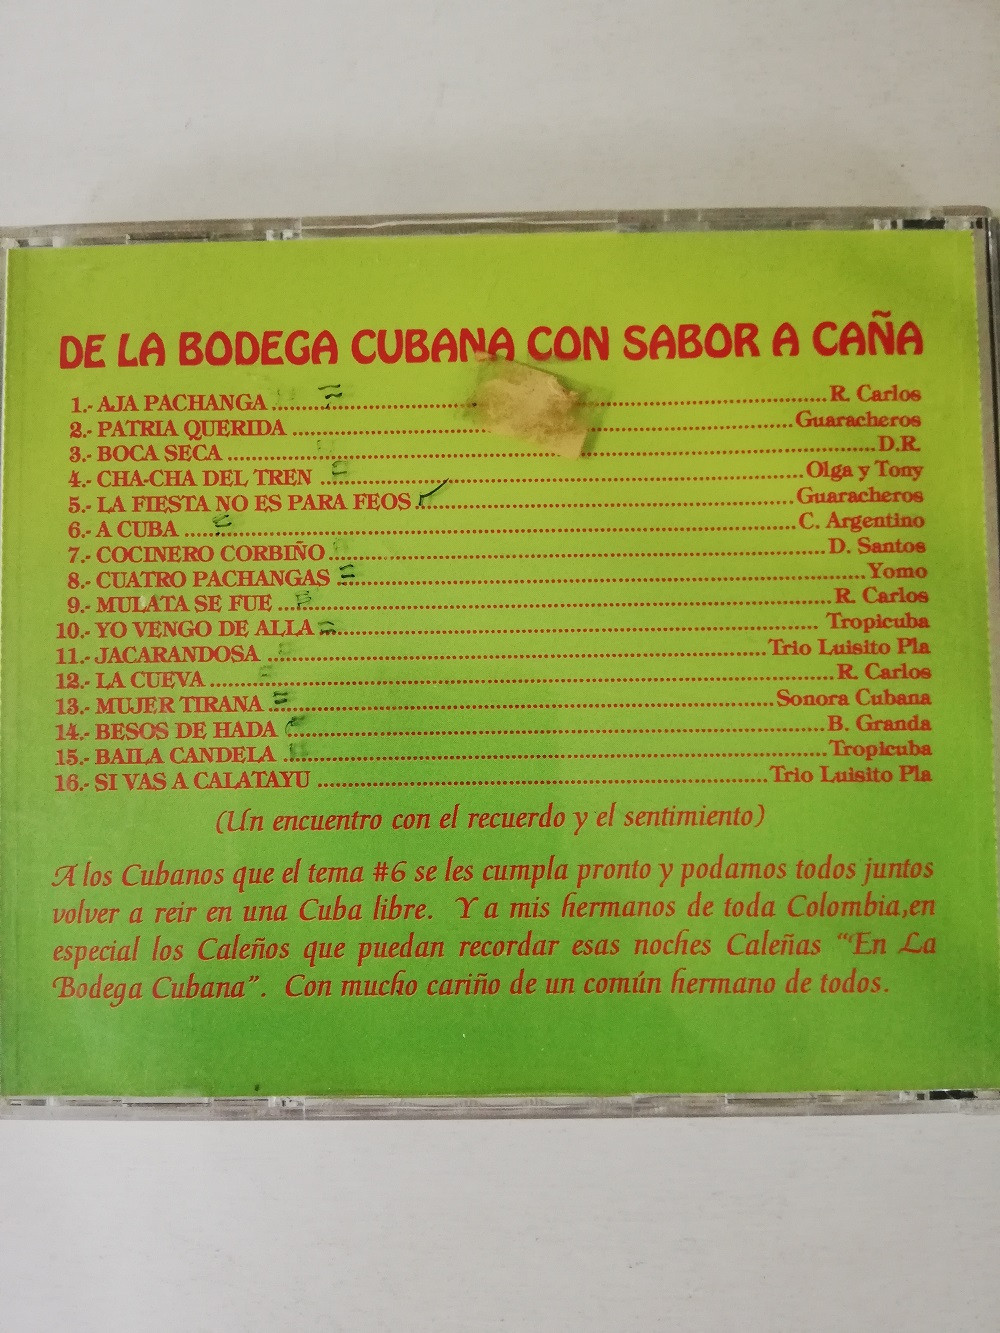 Imagen CD DE LA BODEGA CUBANA CON SABOR A CAÑA - VARIOS INTÉPRETES 2